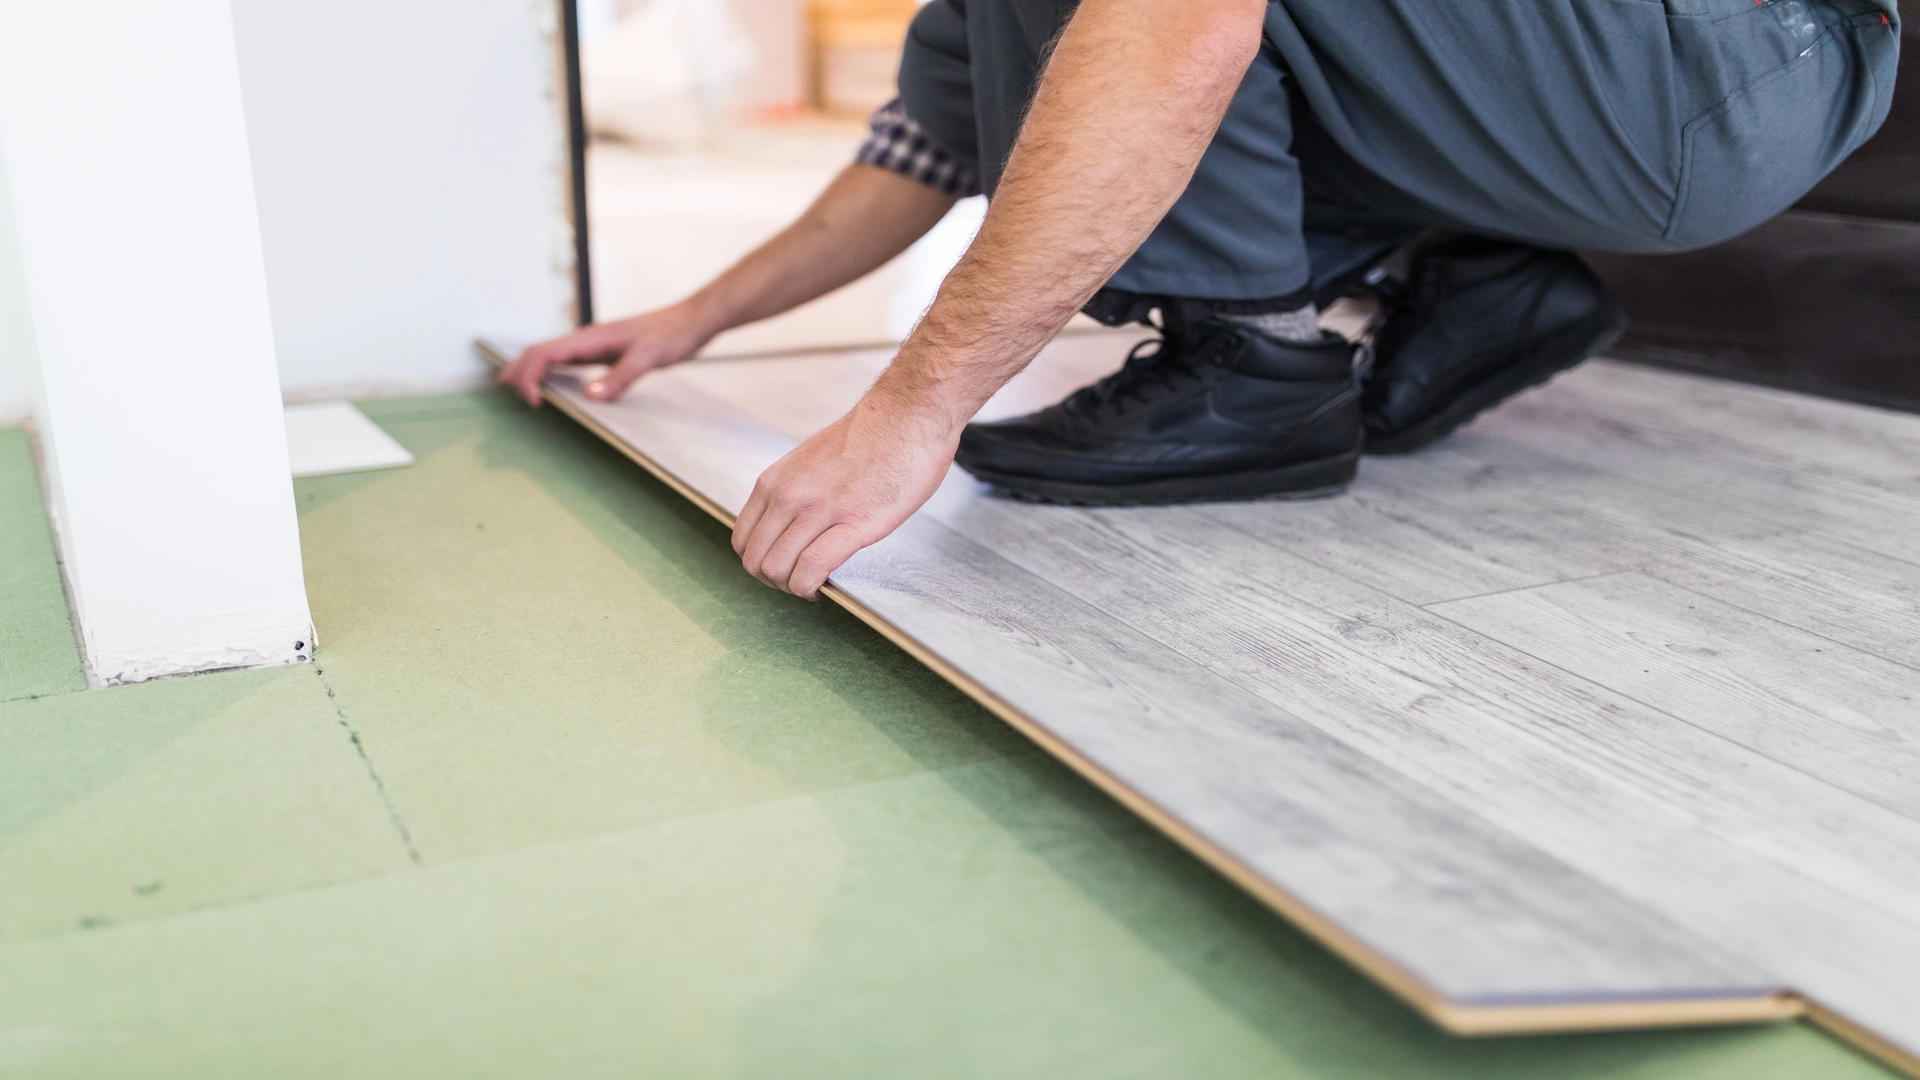 Man installing floor like rubber flooring for basement